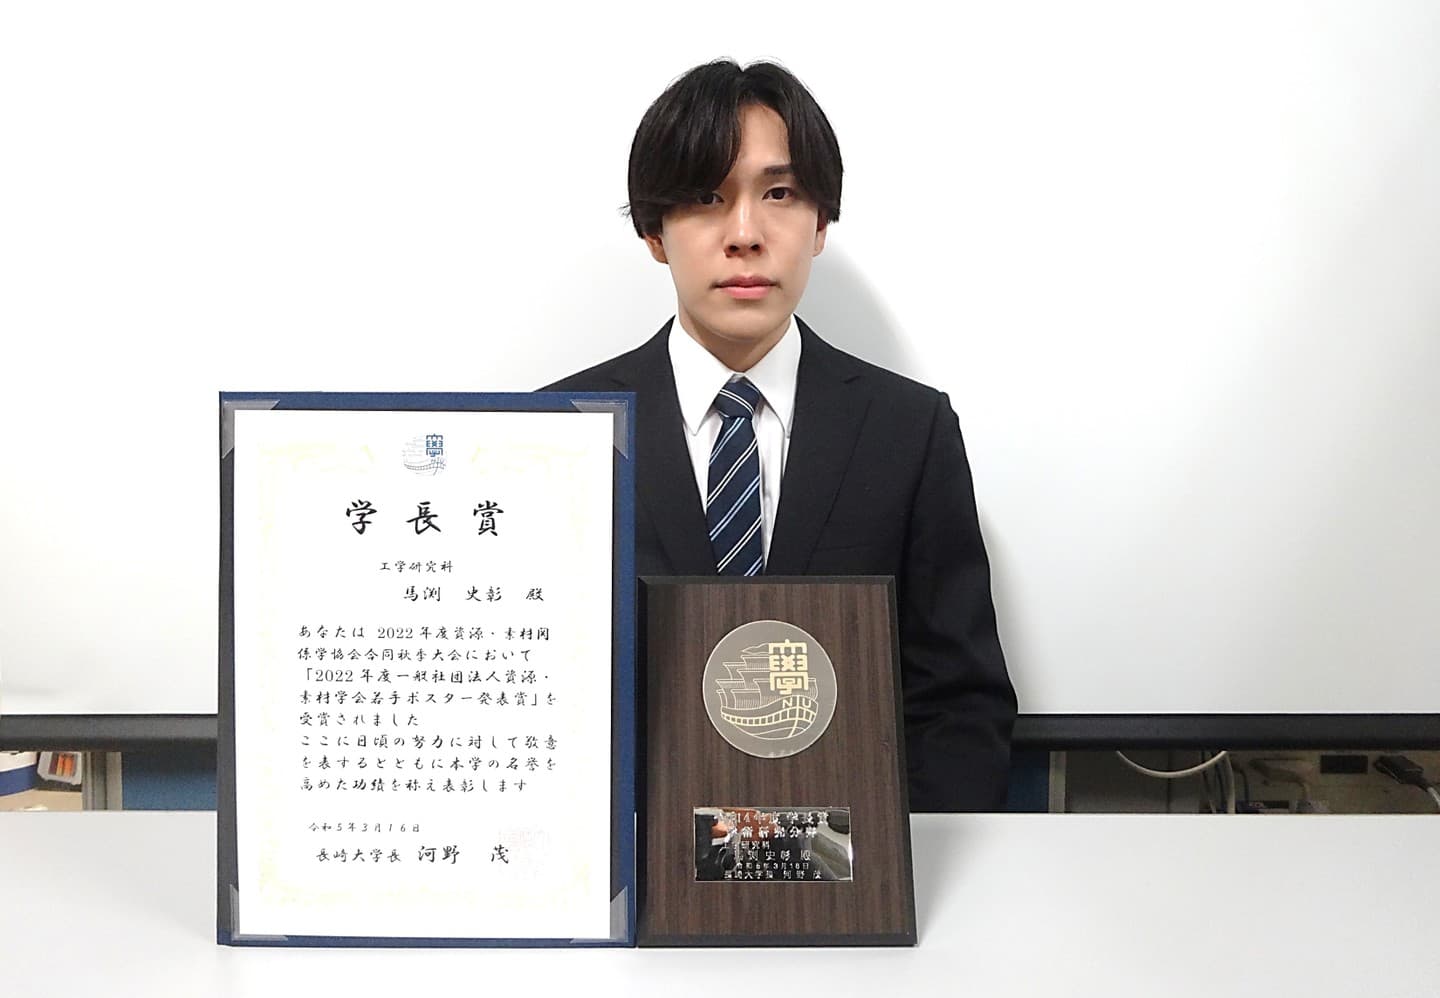 馬渕史彰君(M2)が、学長賞(学術研究分野)を受賞しました。2023/03/16